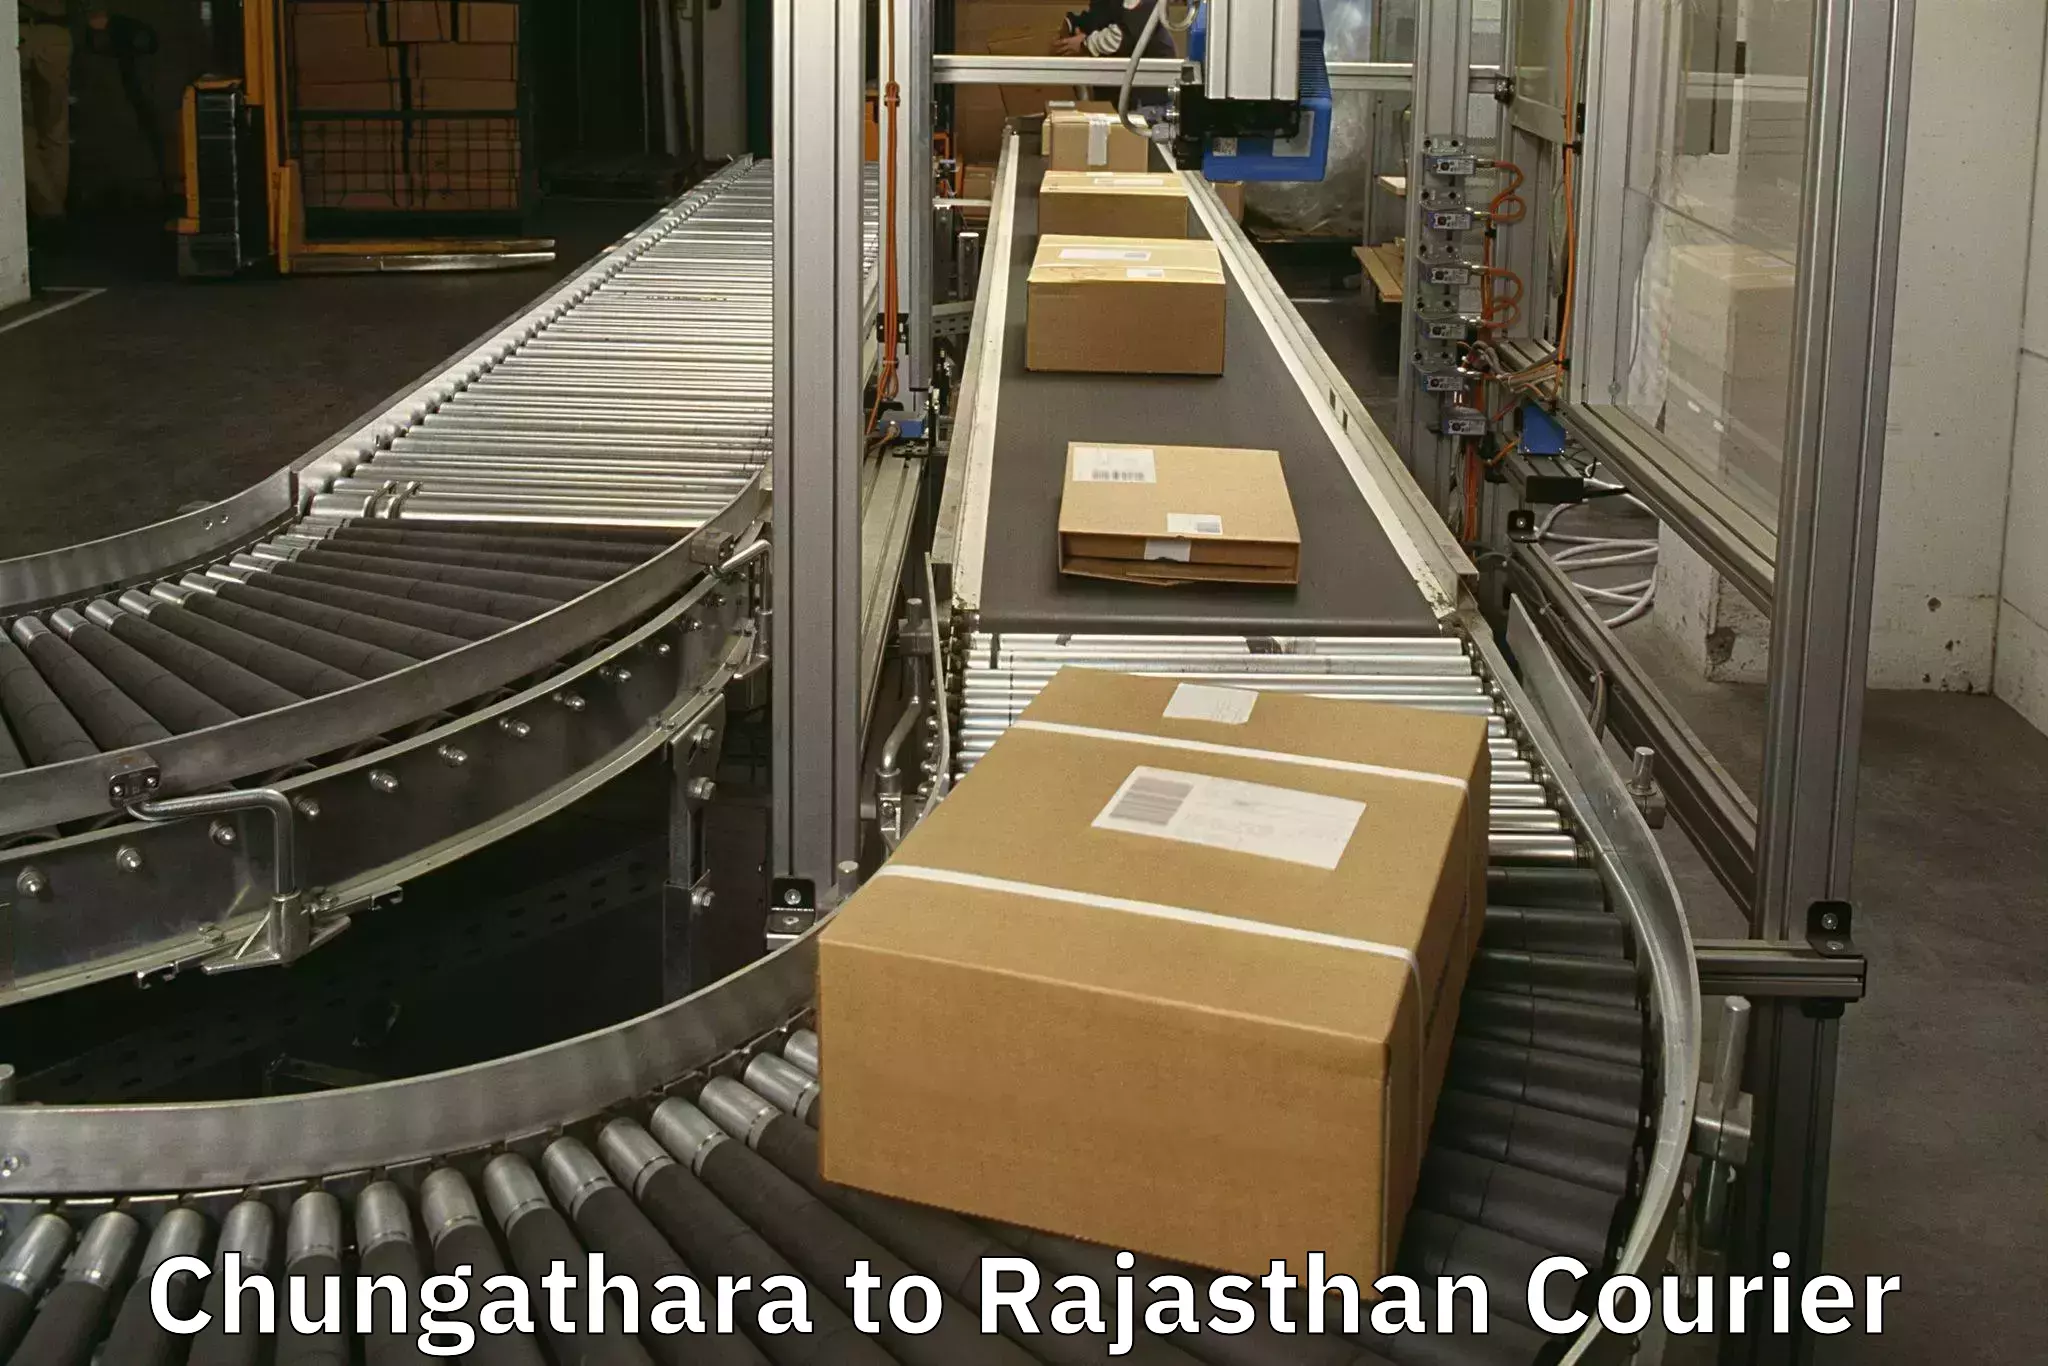 Baggage shipping service Chungathara to Phalodi